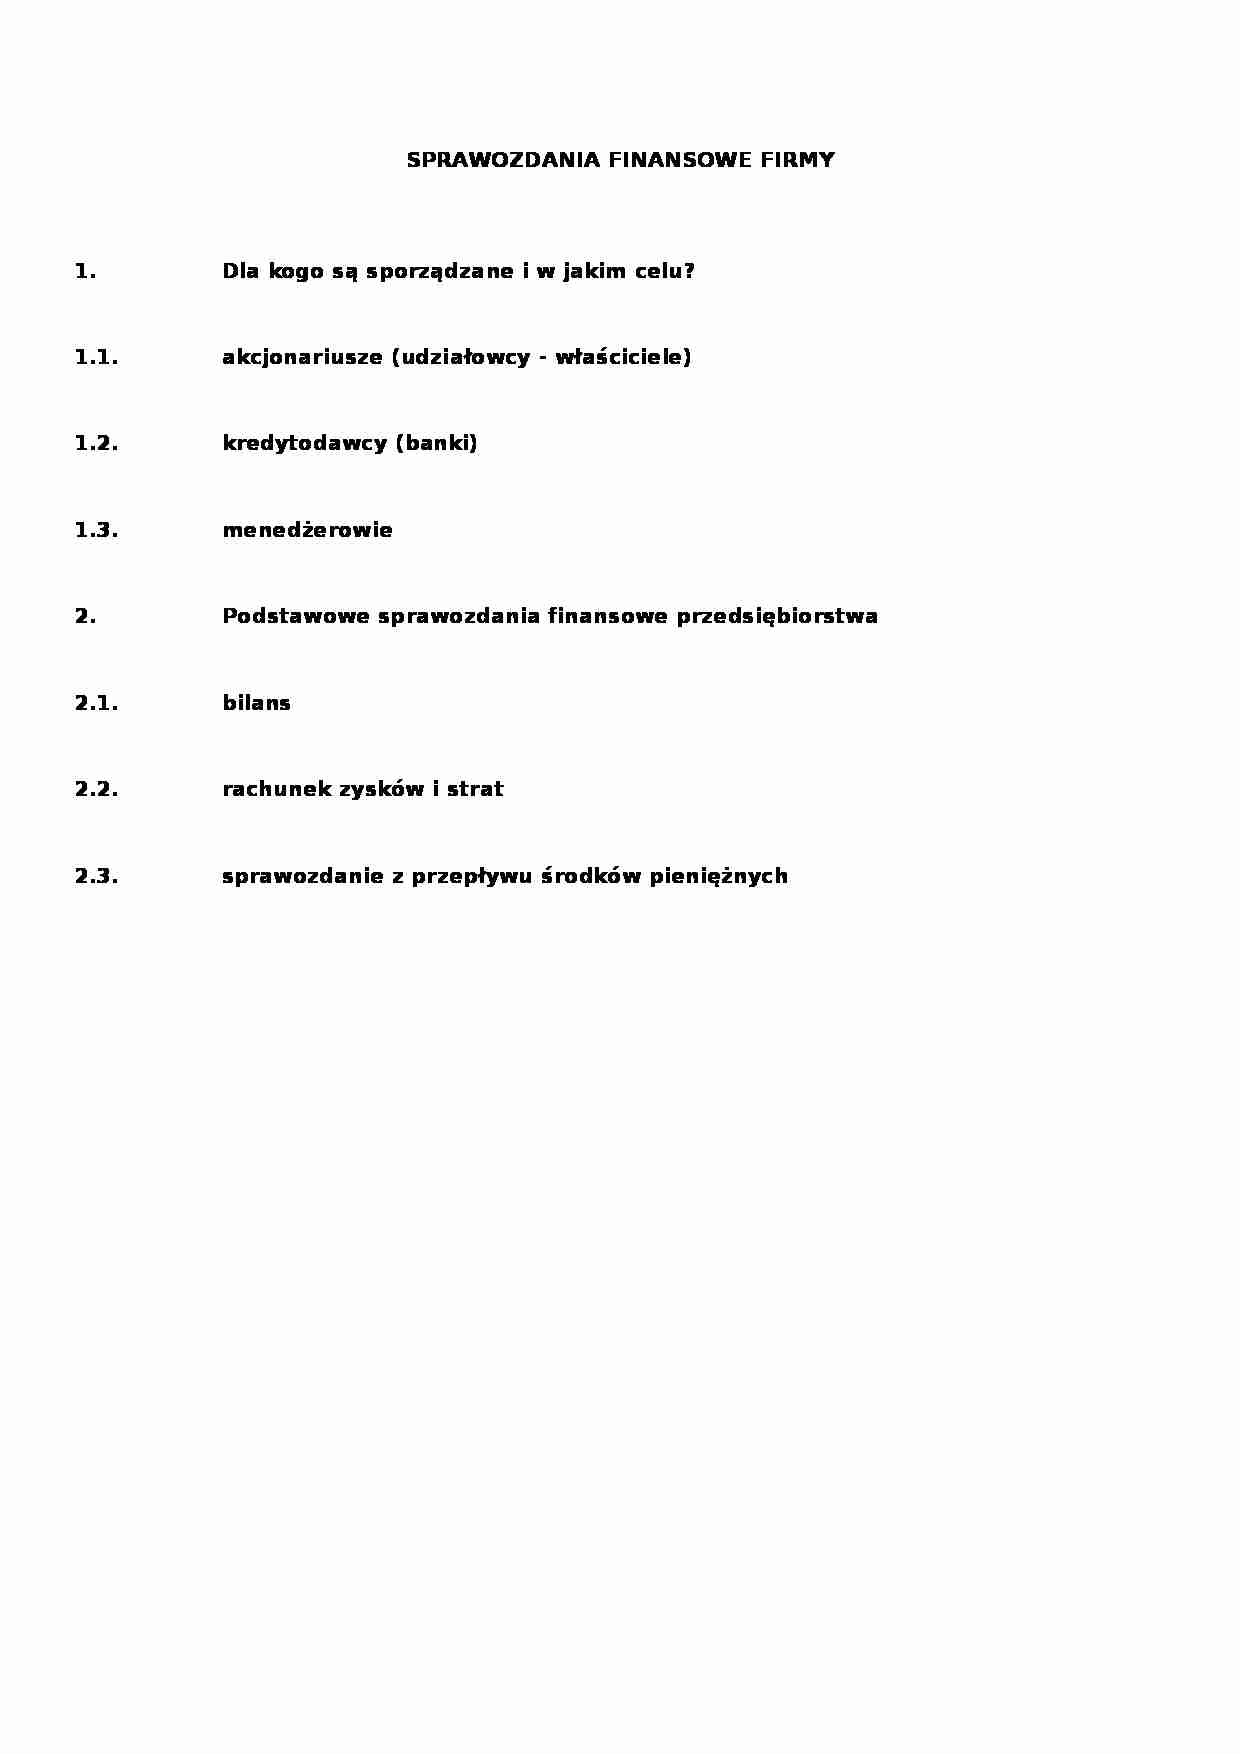 Sprawozdanie finansowe - analiza finansowa - strona 1